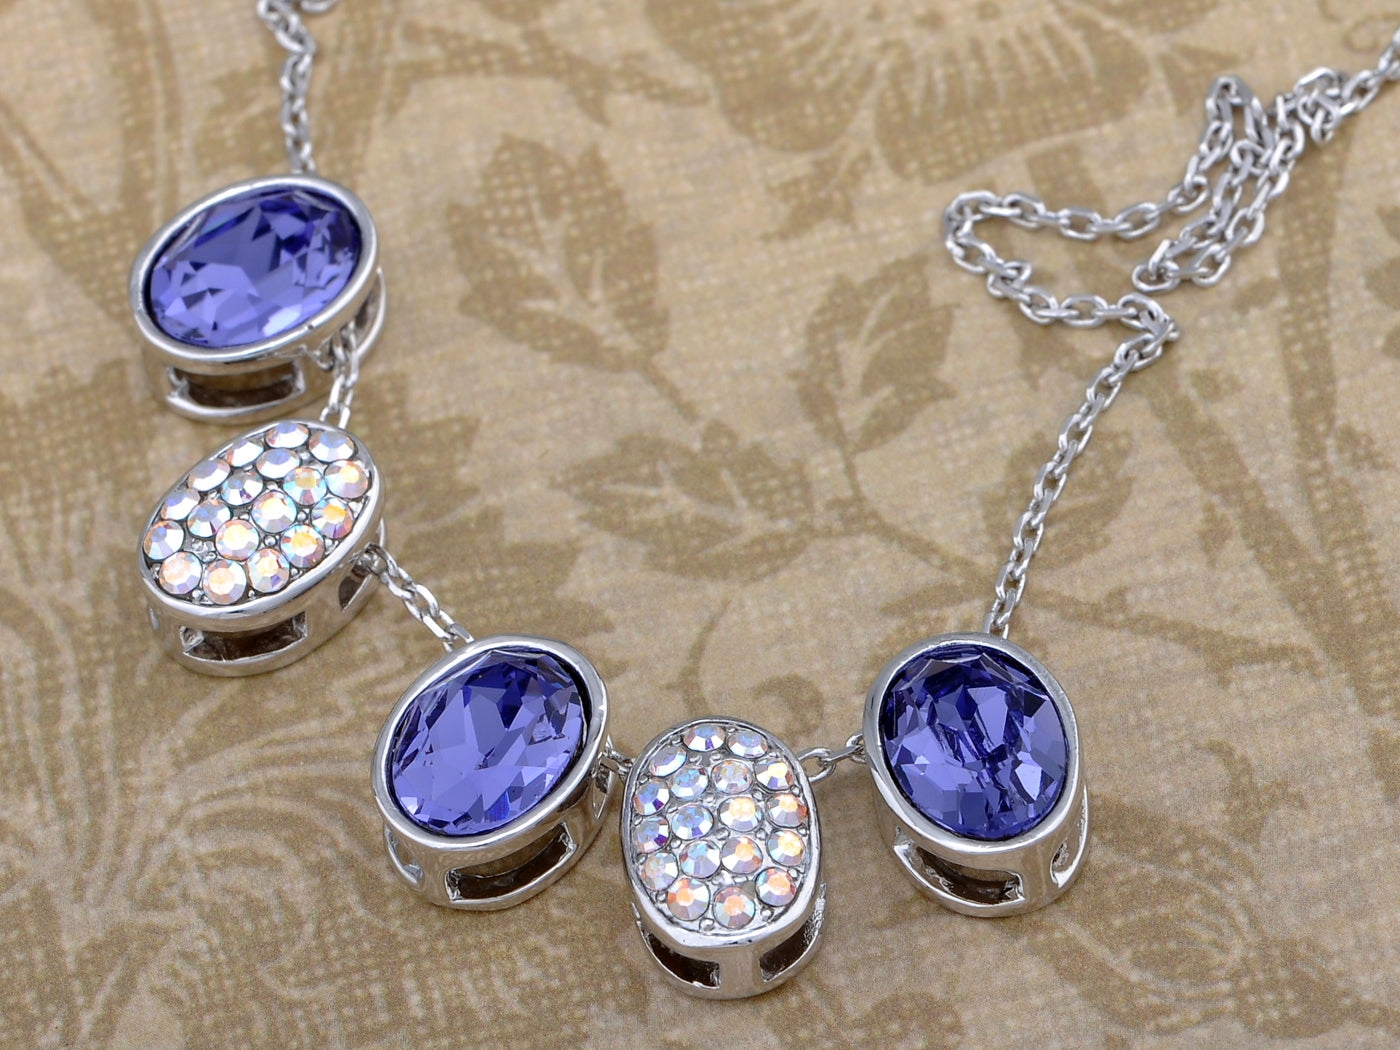 Capri Blue Ab Five Even Ss Collection Element Necklace